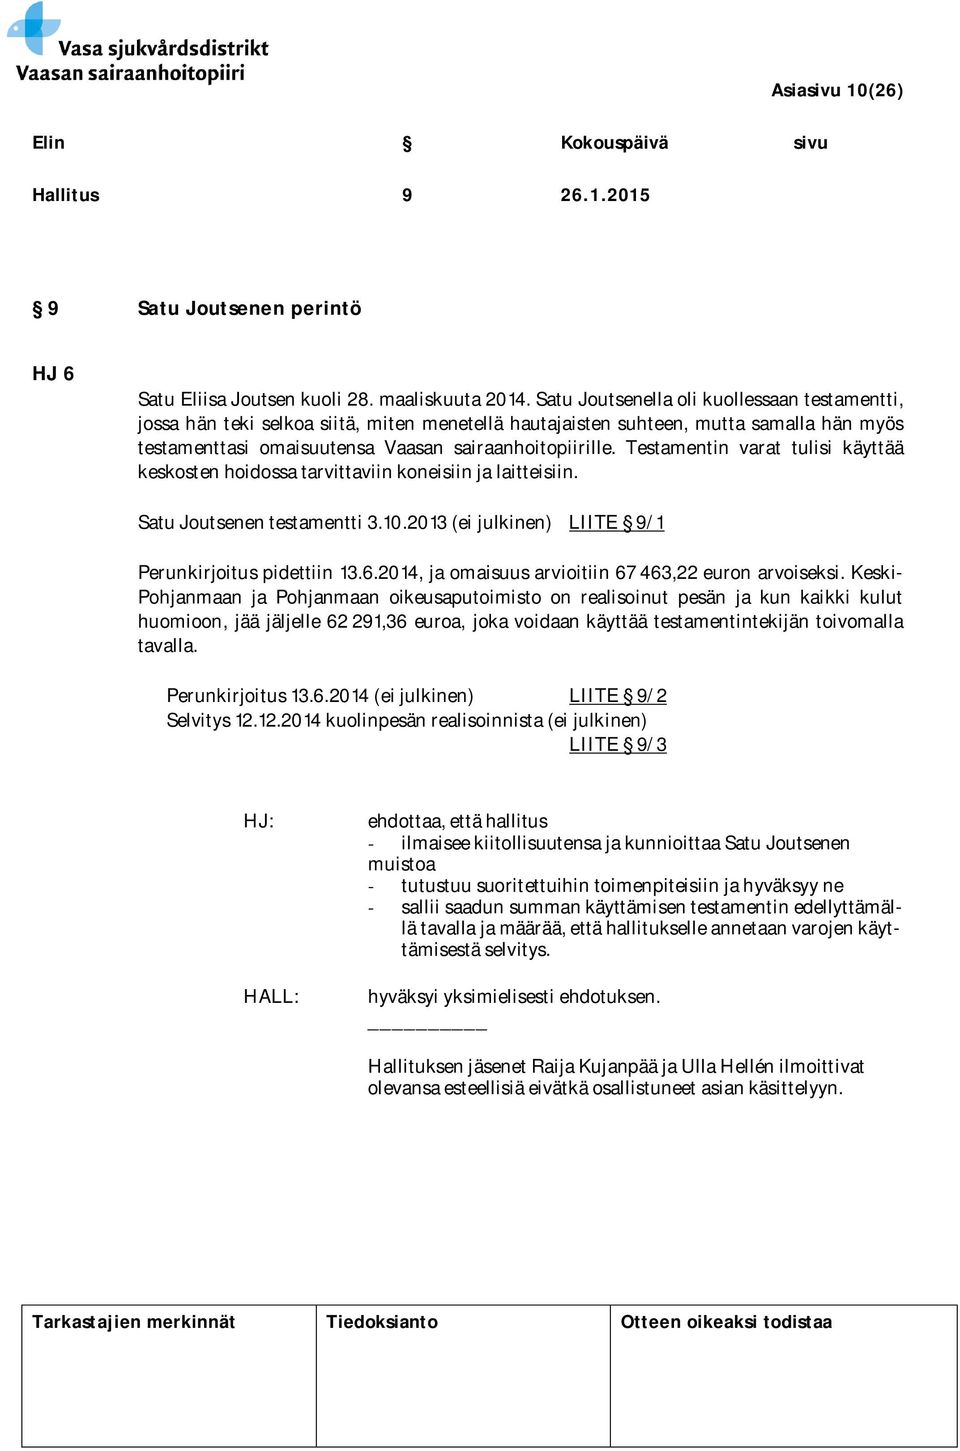 Testamentin varat tulisi käyttää keskosten hoidossa tarvittaviin koneisiin ja laitteisiin. Satu Joutsenen testamentti 3.10.2013 (ei julkinen) LIITE 9/1 Perunkirjoitus pidettiin 13.6.